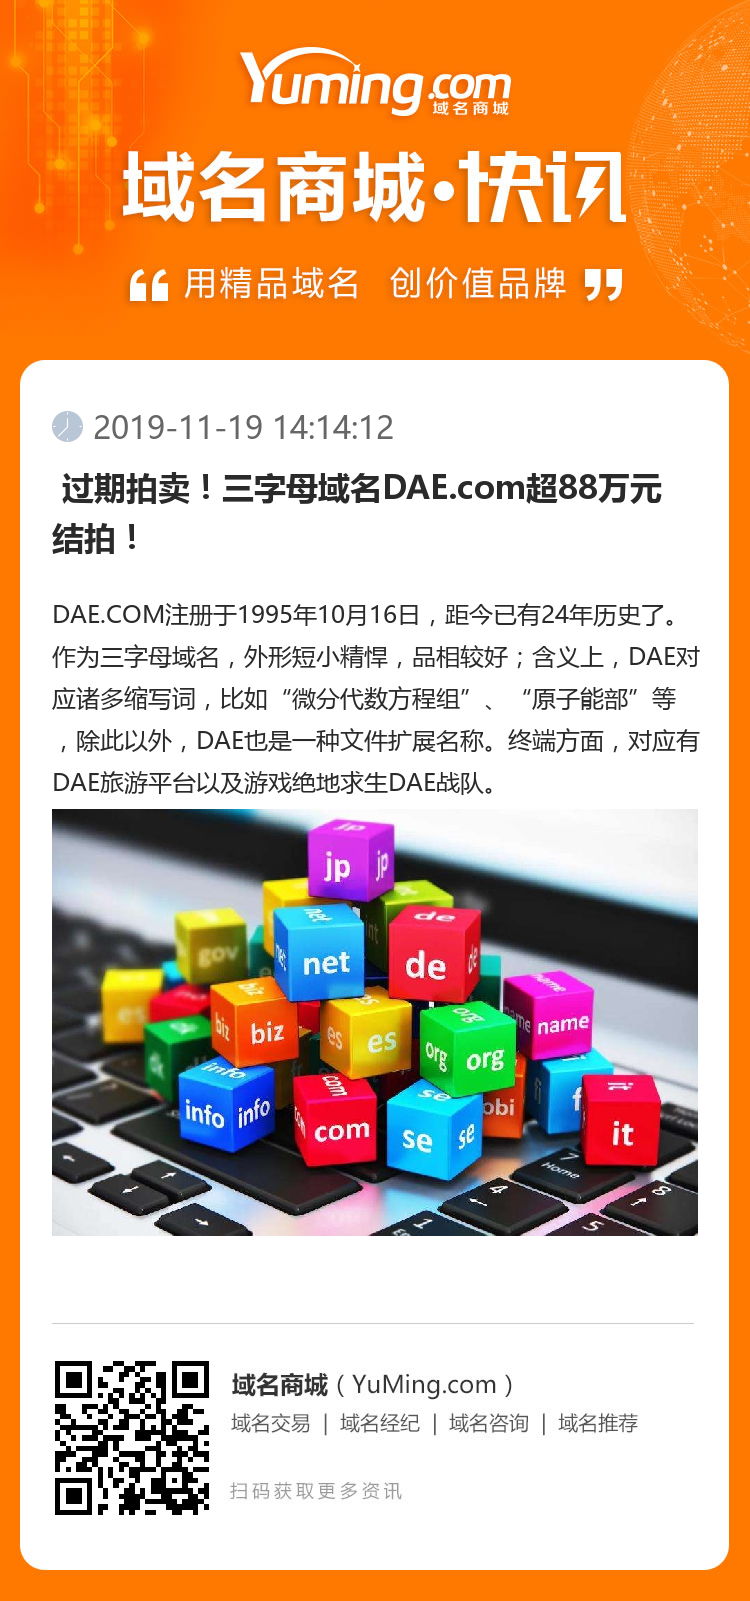  过期拍卖！三字母域名DAE.com超88万元结拍！ 